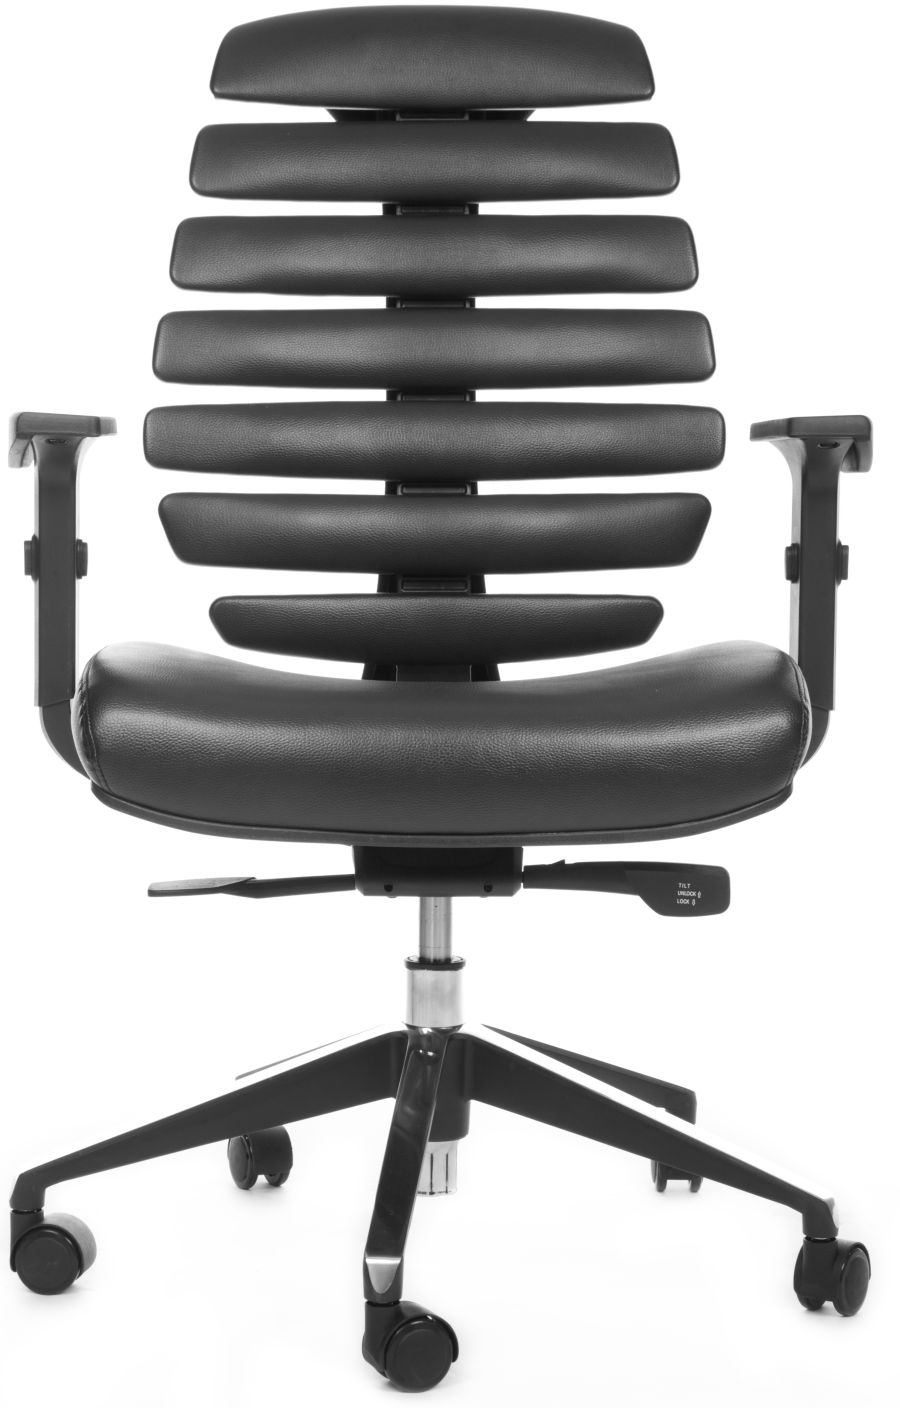 MERCURY kancelárska stolička FISH BONES čierny plast, čierna koženka PU580165.